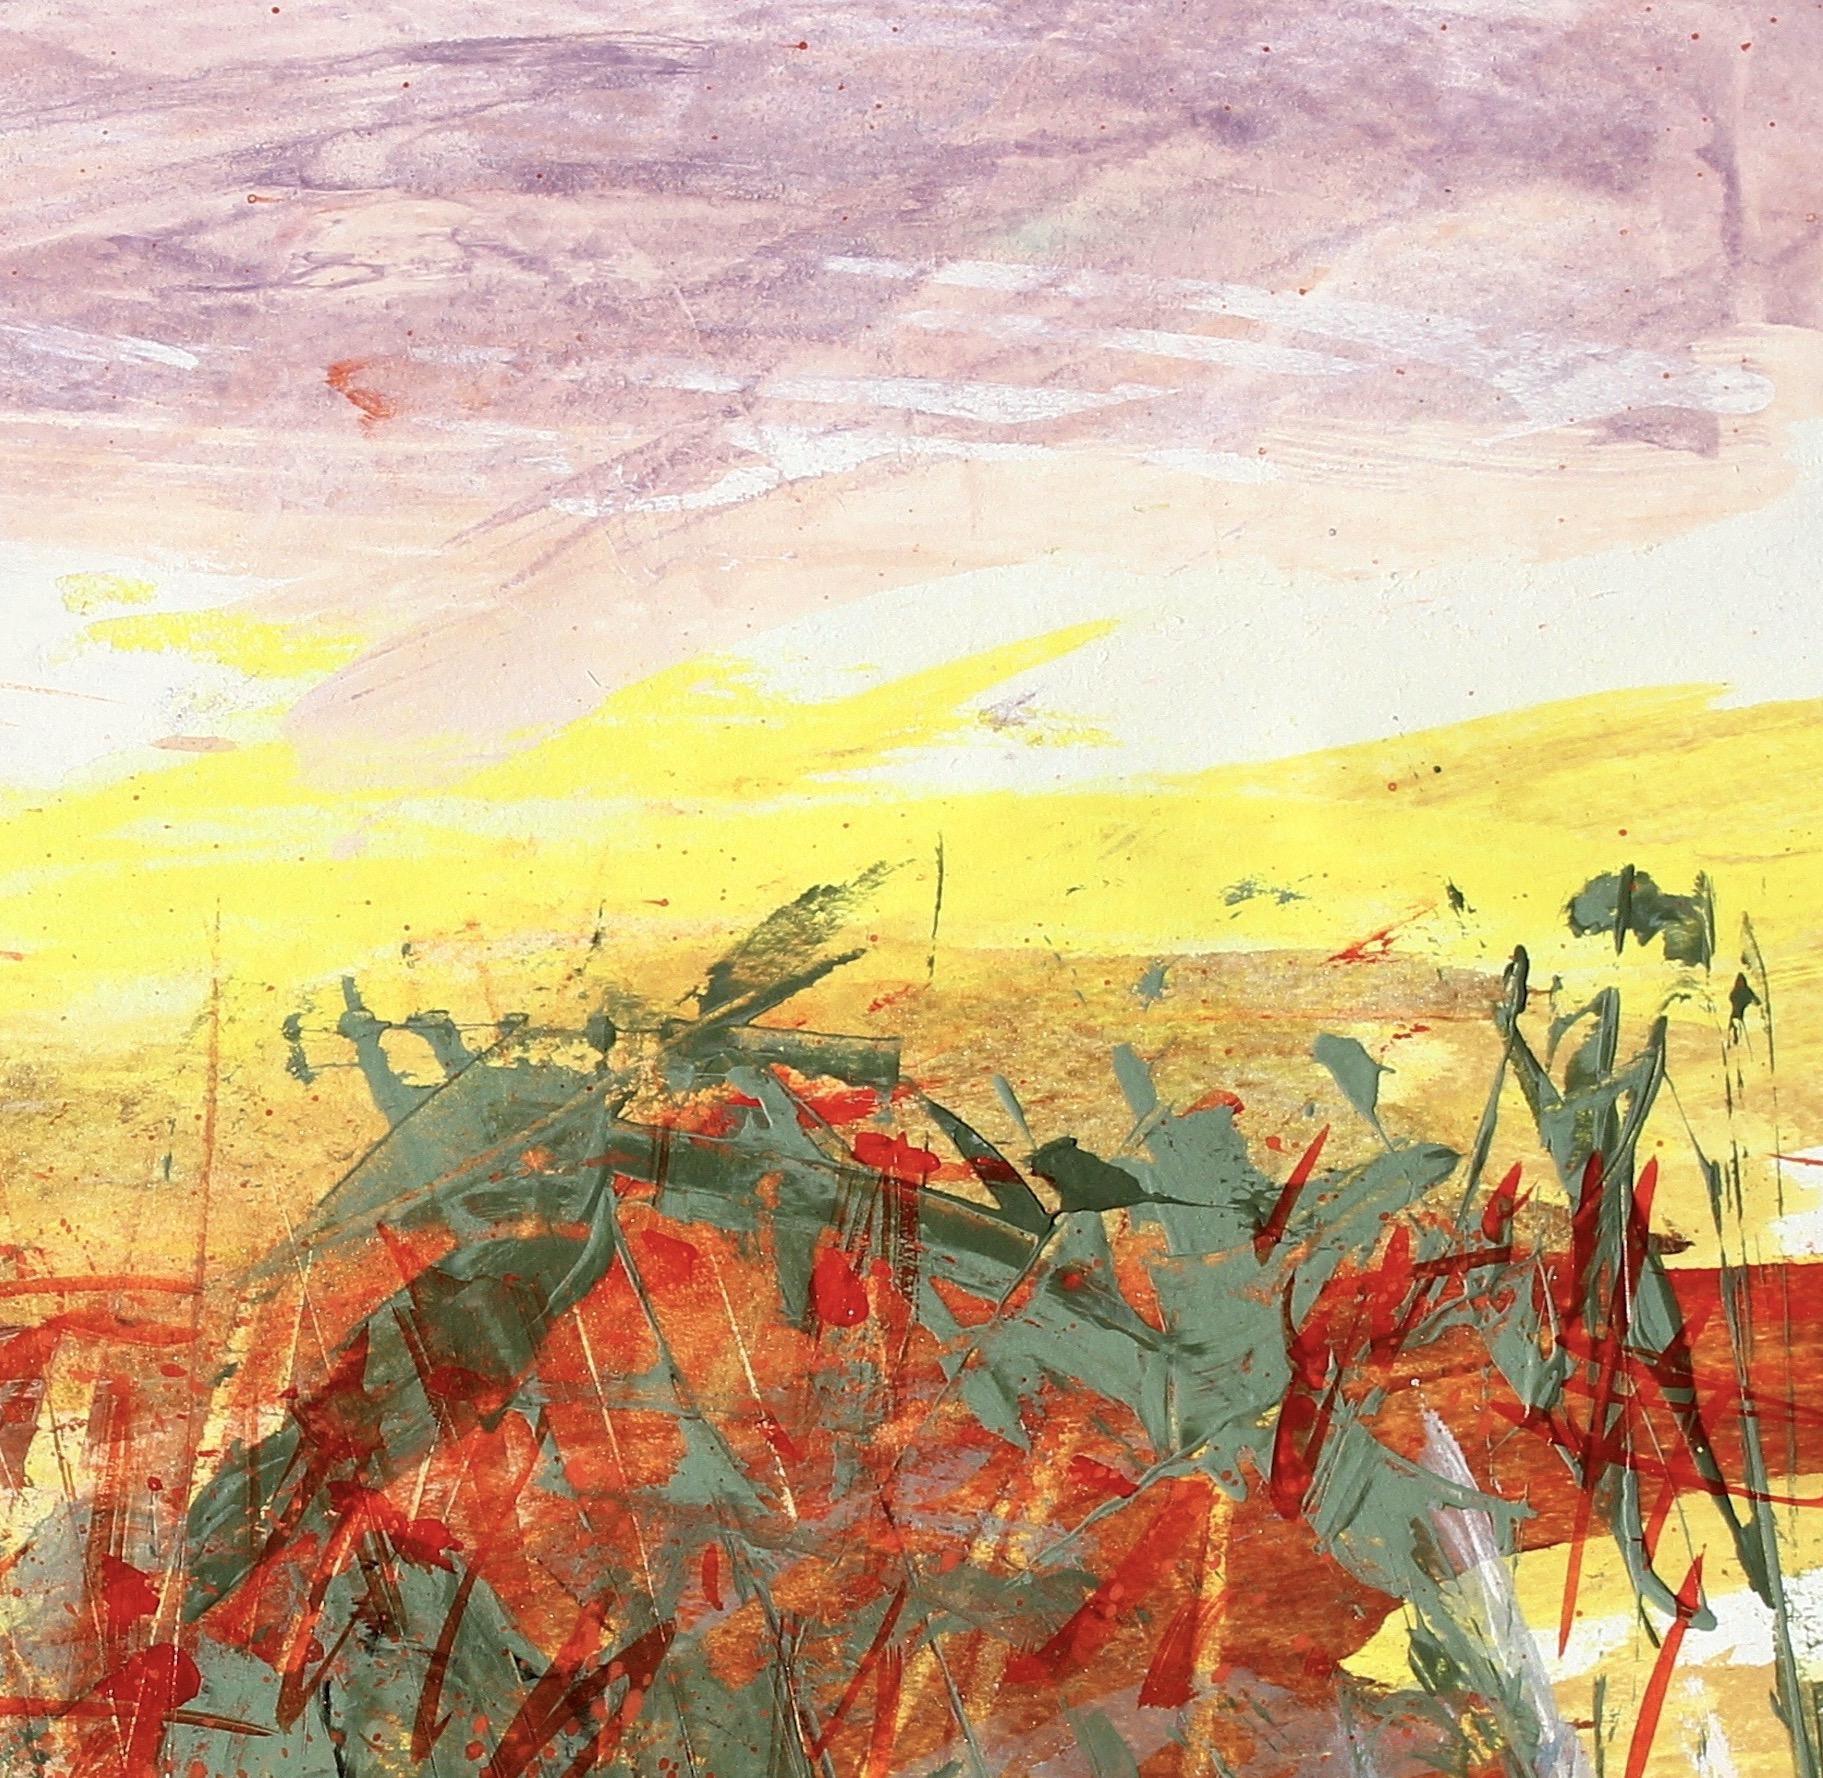 Paysage désertique n°4, peinture de paysage expressionniste abstrait contemporaine signée - Expressionnisme abstrait Painting par Simona Gocan